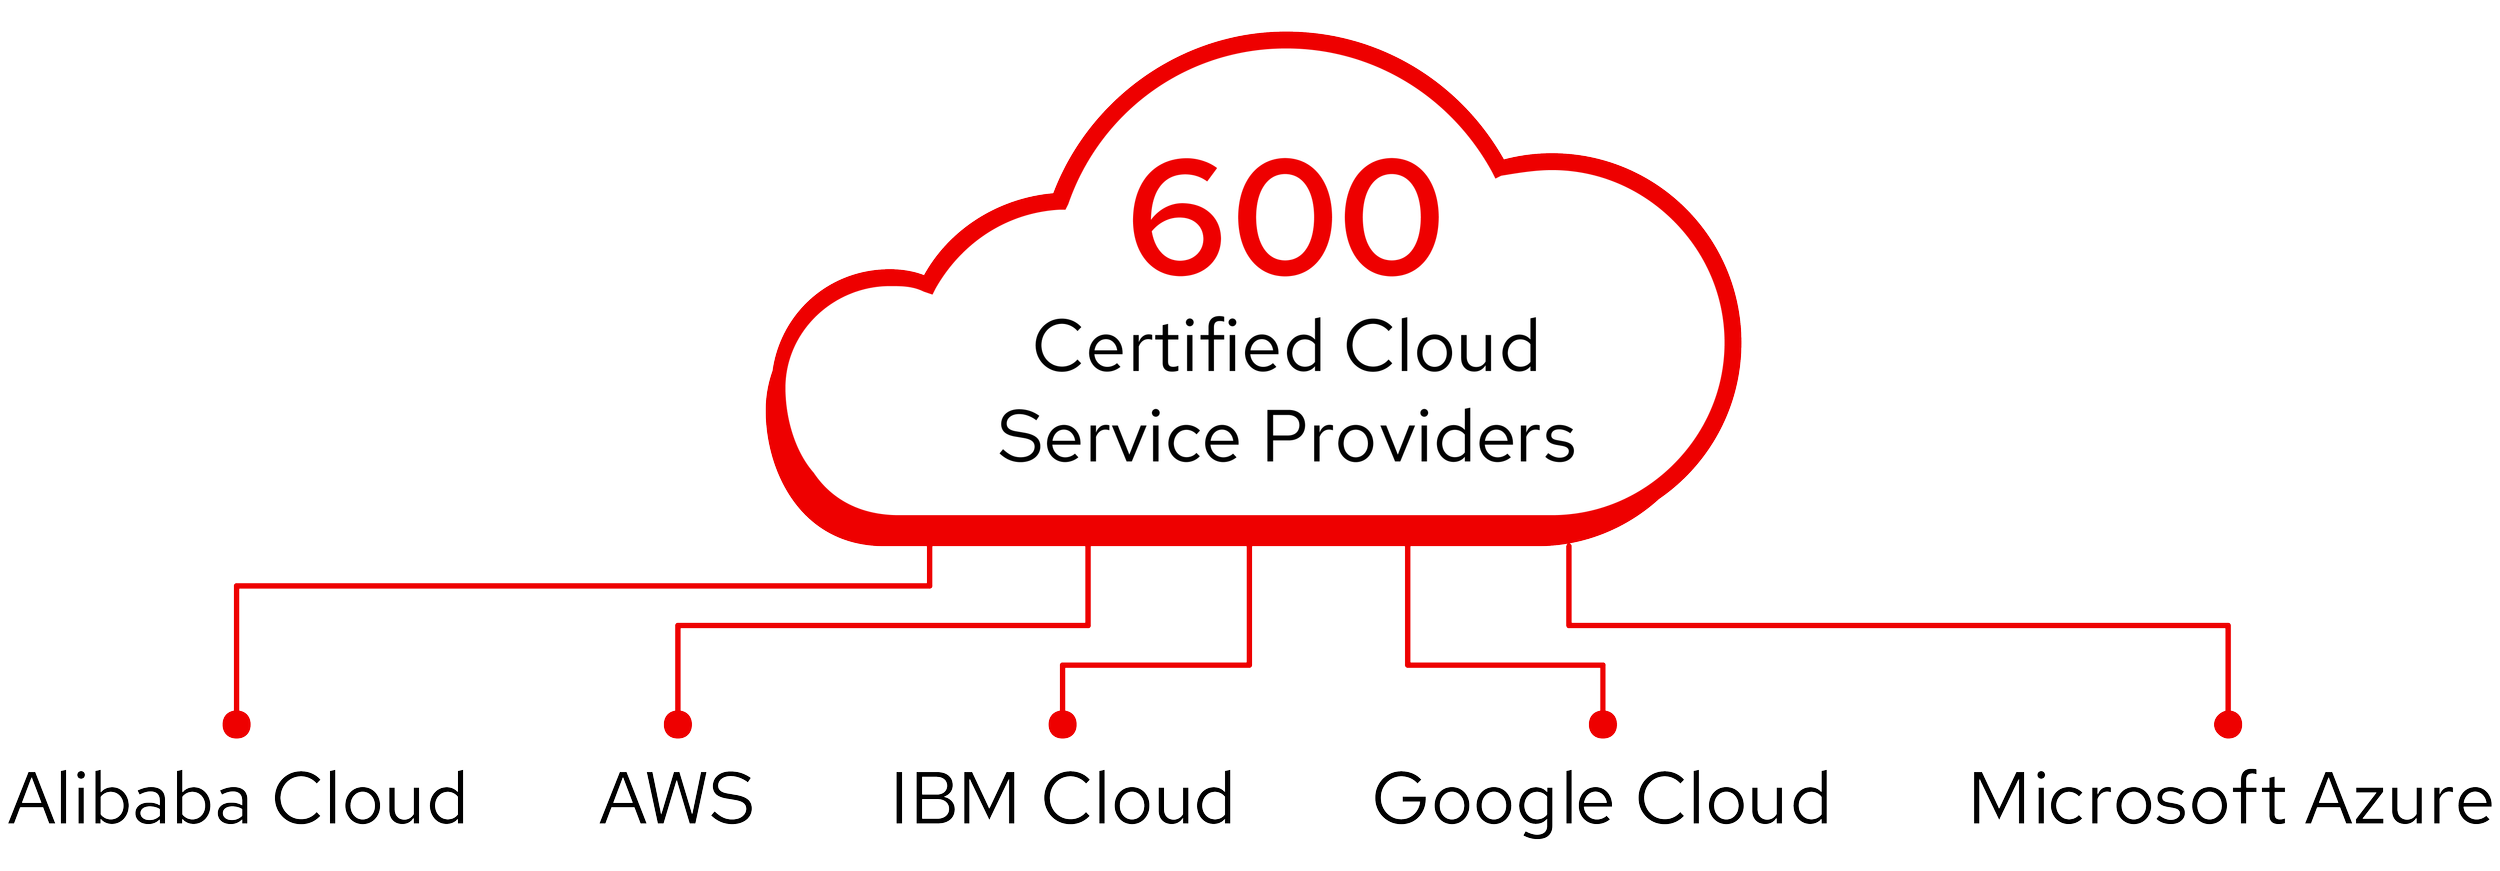 红帽企业Linus既可在现场工作，也可在云环境中与600家认证的云服务提供商(如阿里云)合作, AWS, IBM Cloud, 谷歌云, 微软Azure